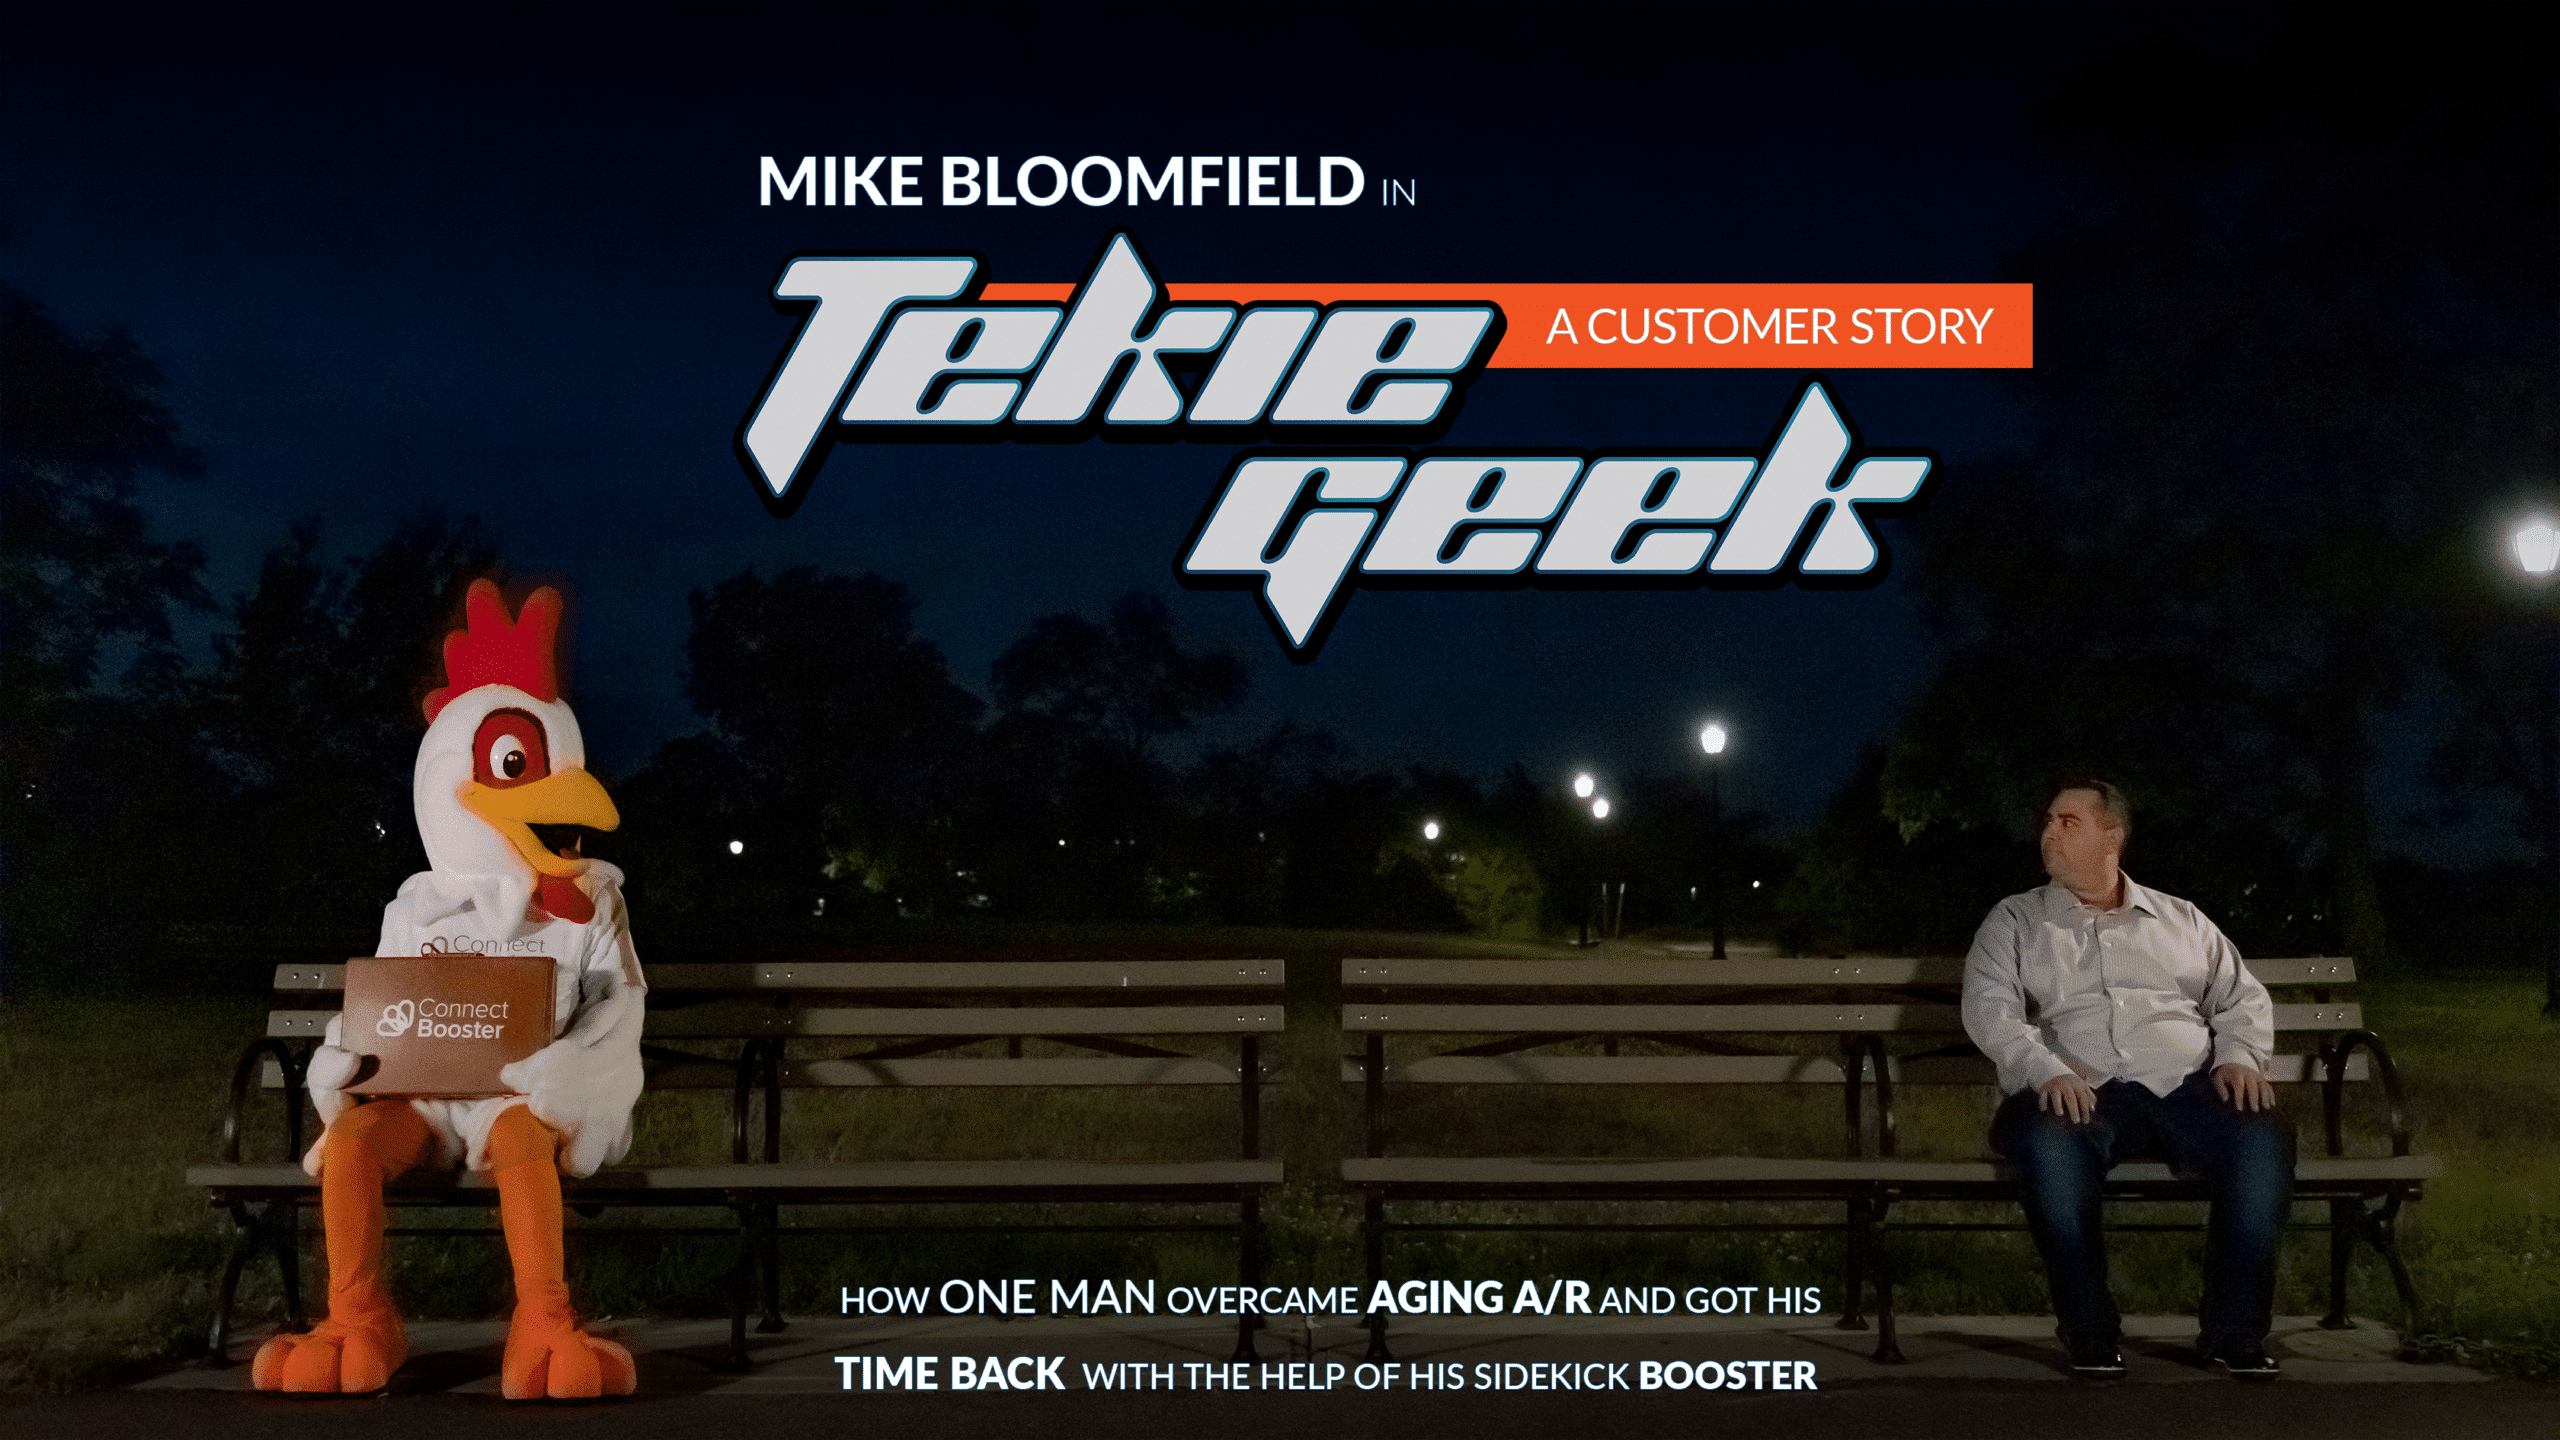 Customer Story | Mike Bloomfield – Tekie Geek